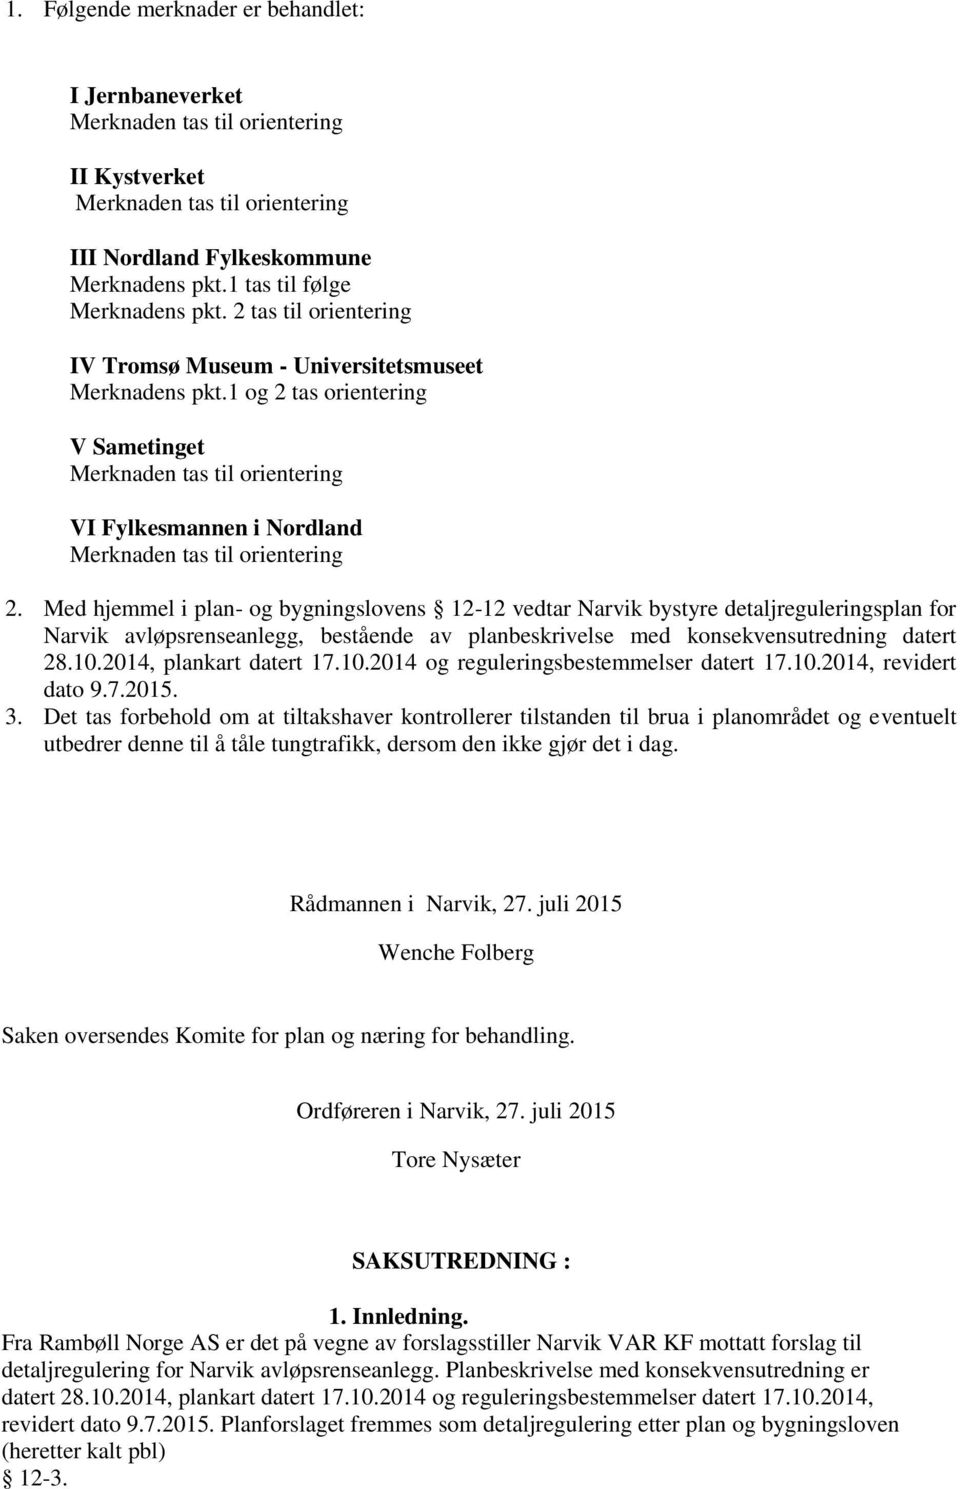 Med hjemmel i plan- og bygningslovens 12-12 vedtar Narvik bystyre detaljreguleringsplan for Narvik avløpsrenseanlegg, bestående av planbeskrivelse med konsekvensutredning datert 28.10.